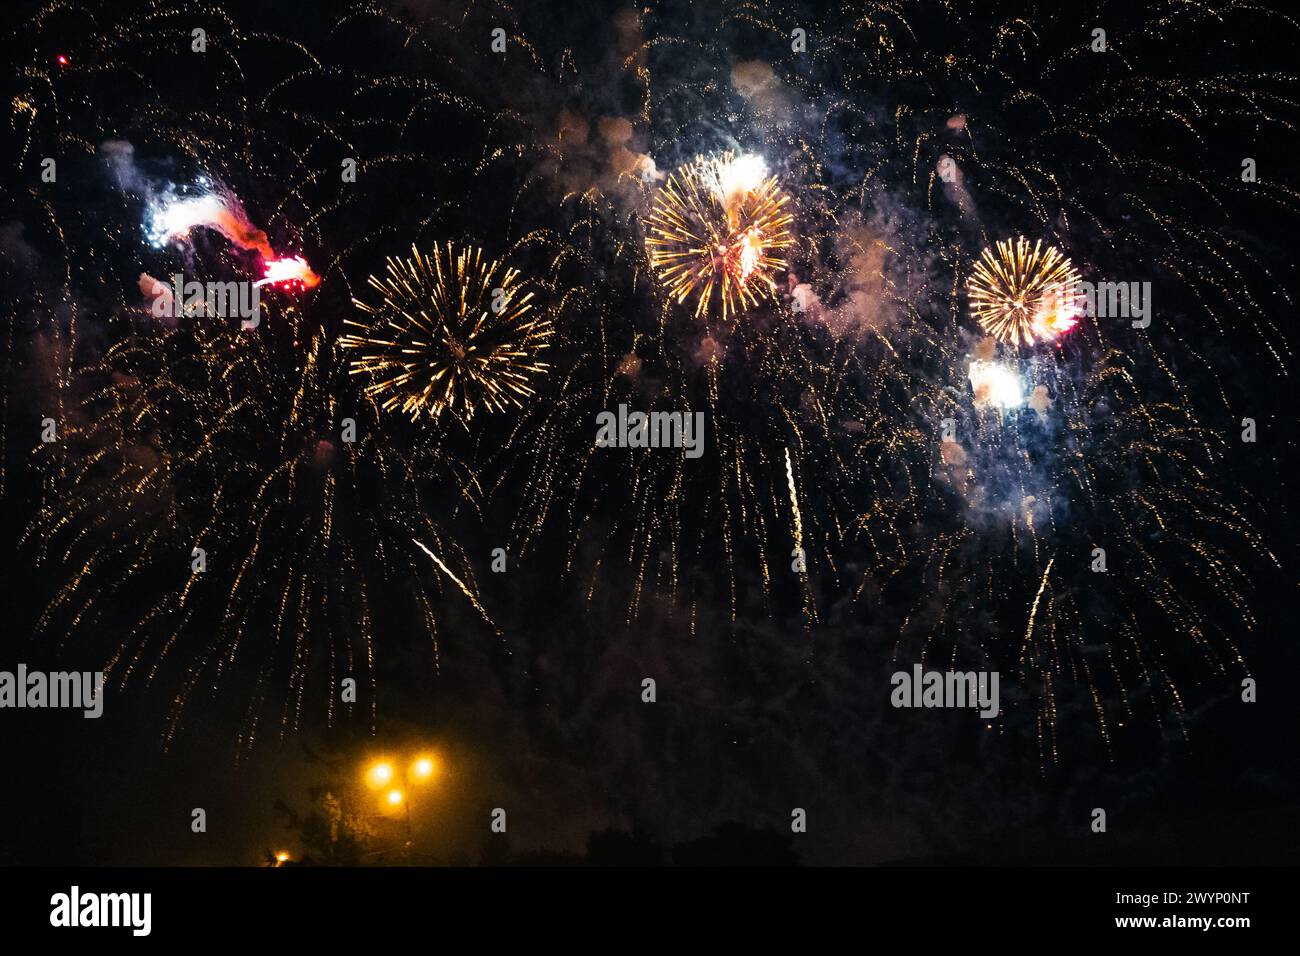 Festliches, helles Feuerwerk auf dem Hintergrund eines dunklen Nachthimmels Stockfoto